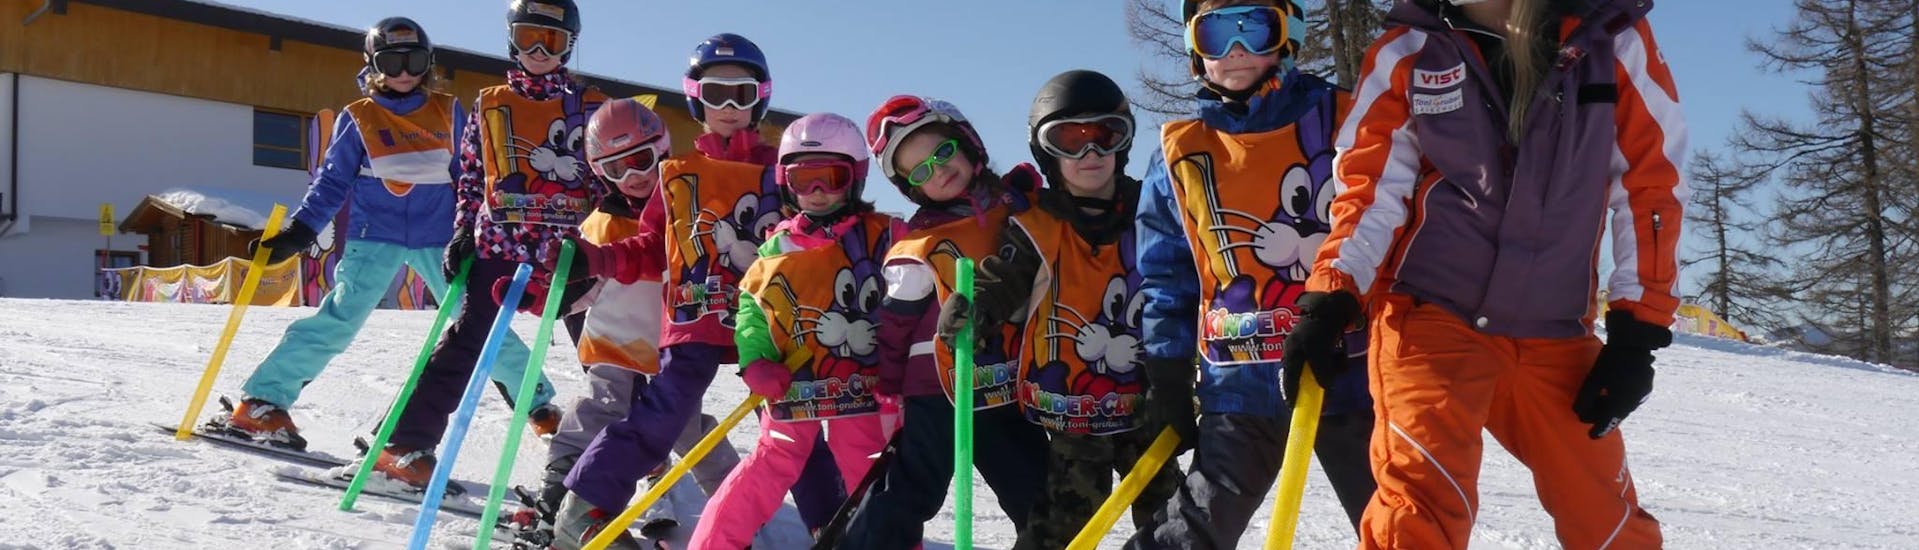 Skilessen voor kinderen (4-14 jaar) voor Alle niveaus - Halve dag met Skischule Toni Gruber.